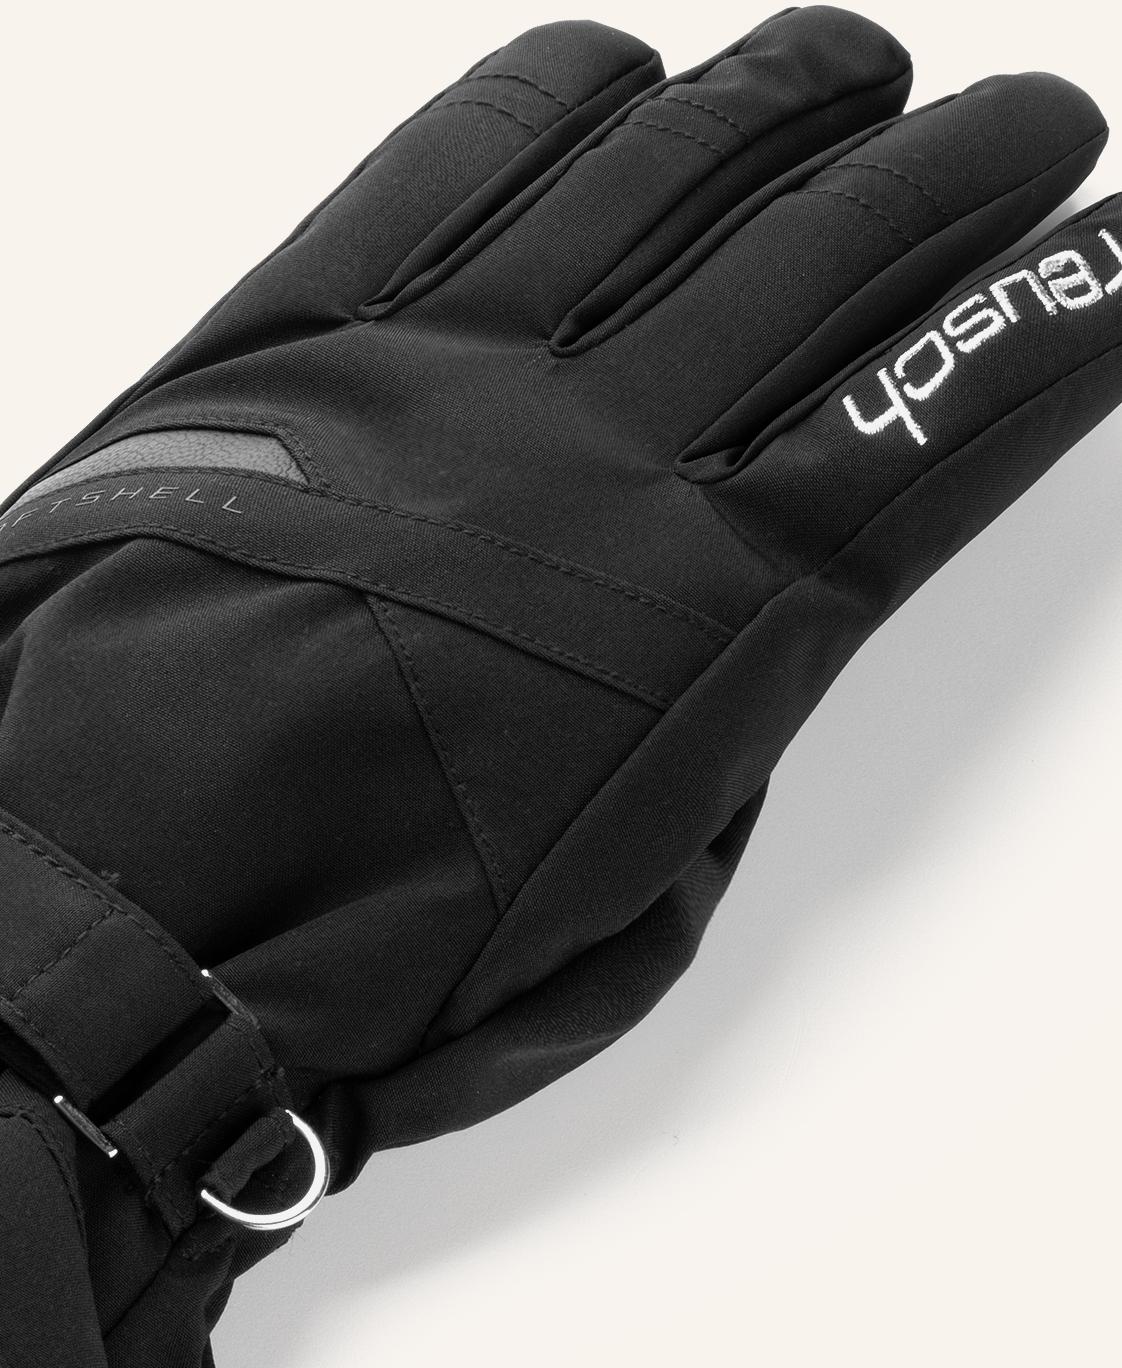 Reusch Hellen R-TEX Shop Online black im Skihandschuhe von 7702 silver SportScheck XT / kaufen